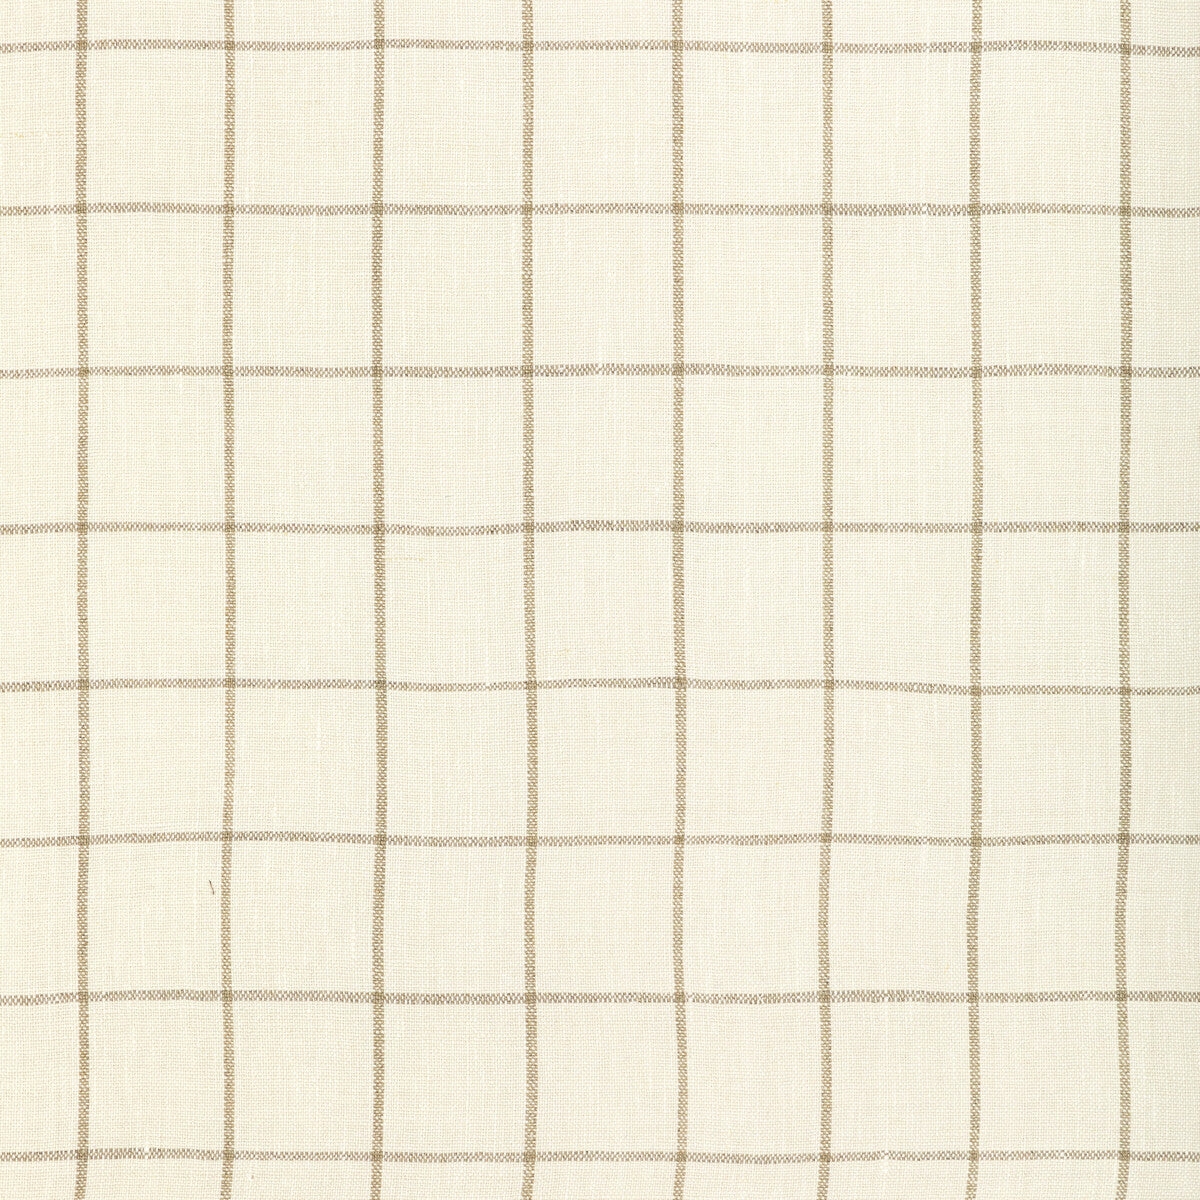 Kravet Basics fabric in 36585-106 color - pattern 36585.106.0 - by Kravet Basics